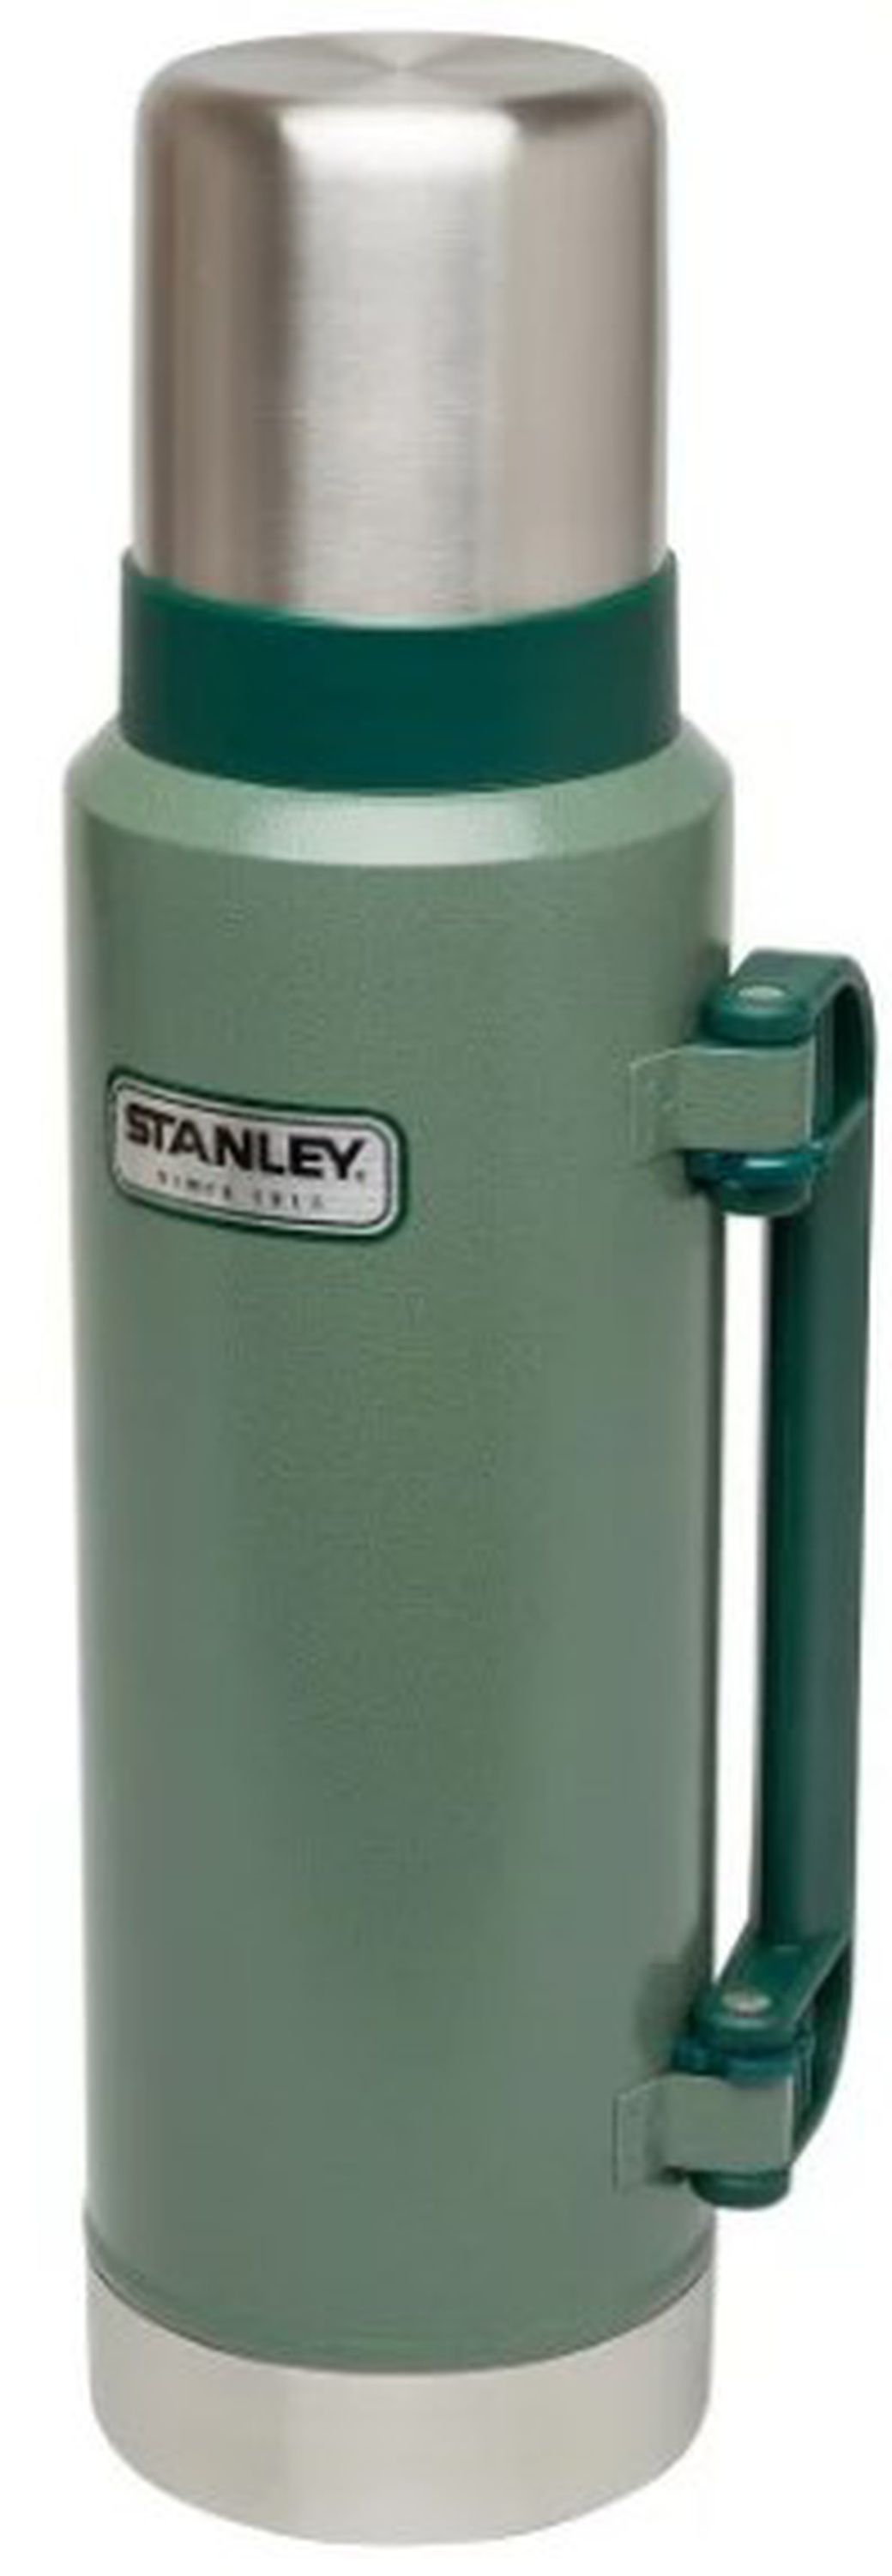 Термос Stanley Classic Vac Bottle Hertiage (10-01032-037) 1.3л. зеленый/серебристый фото